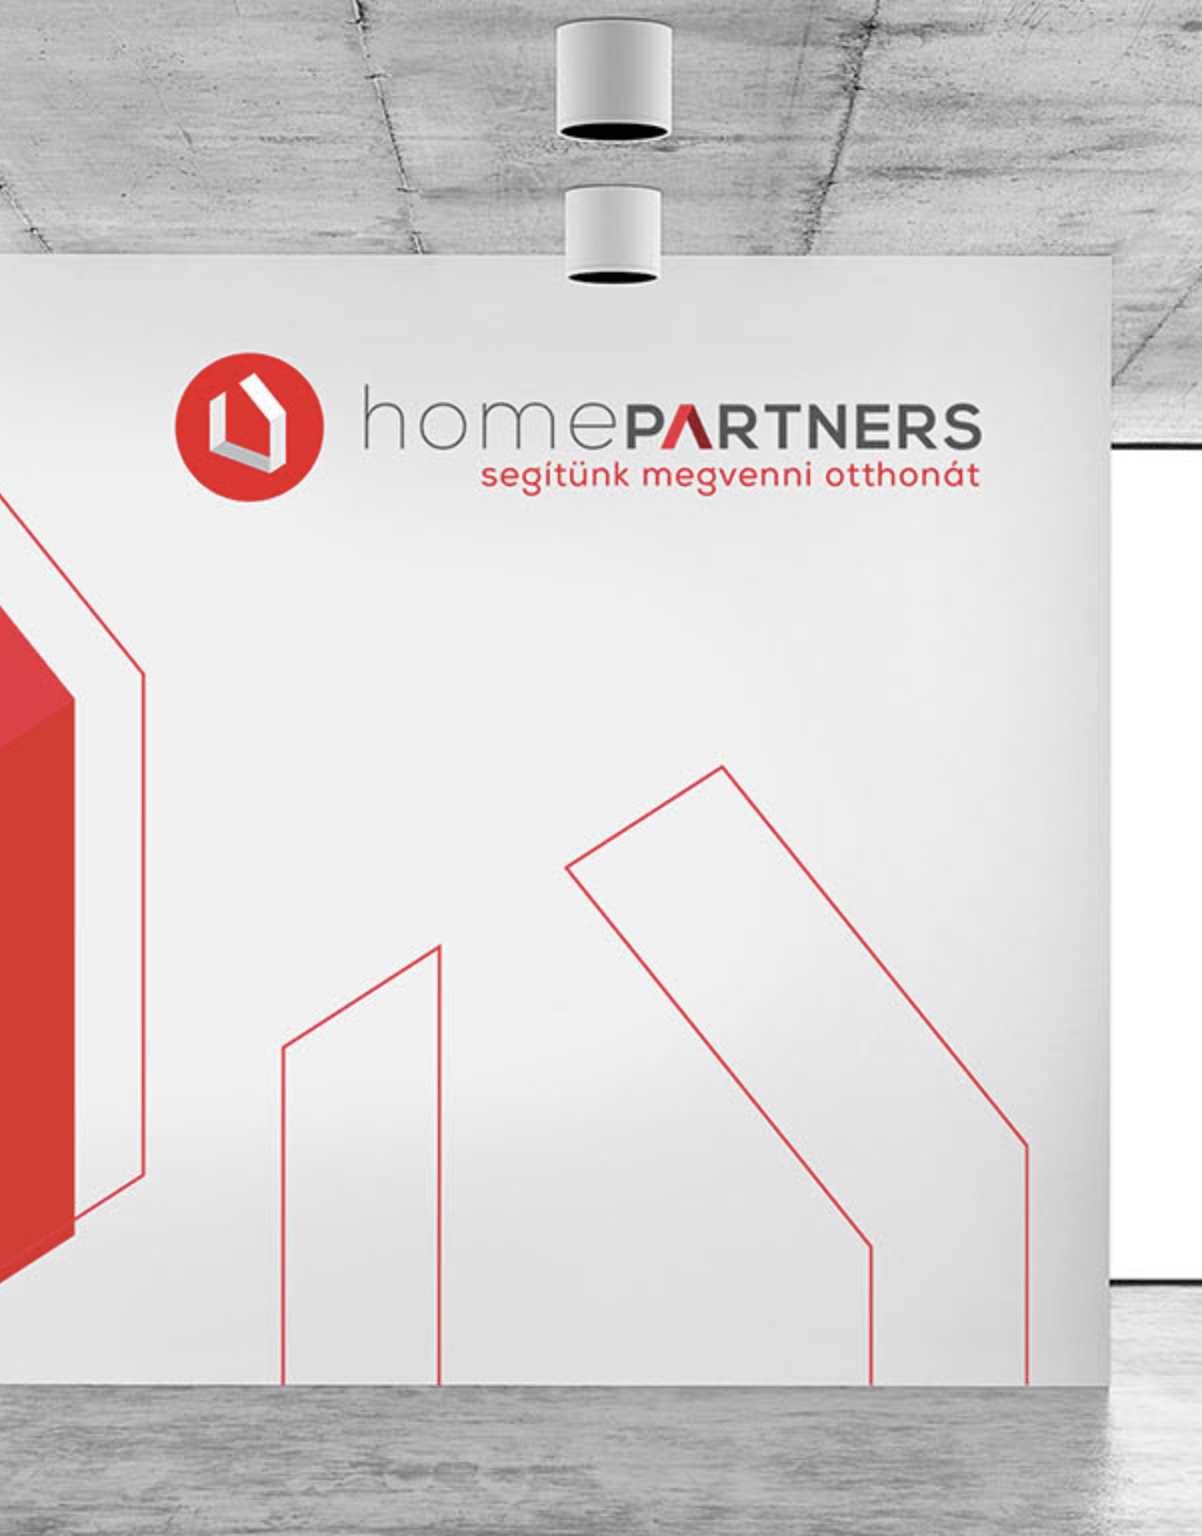 homepartners logo design